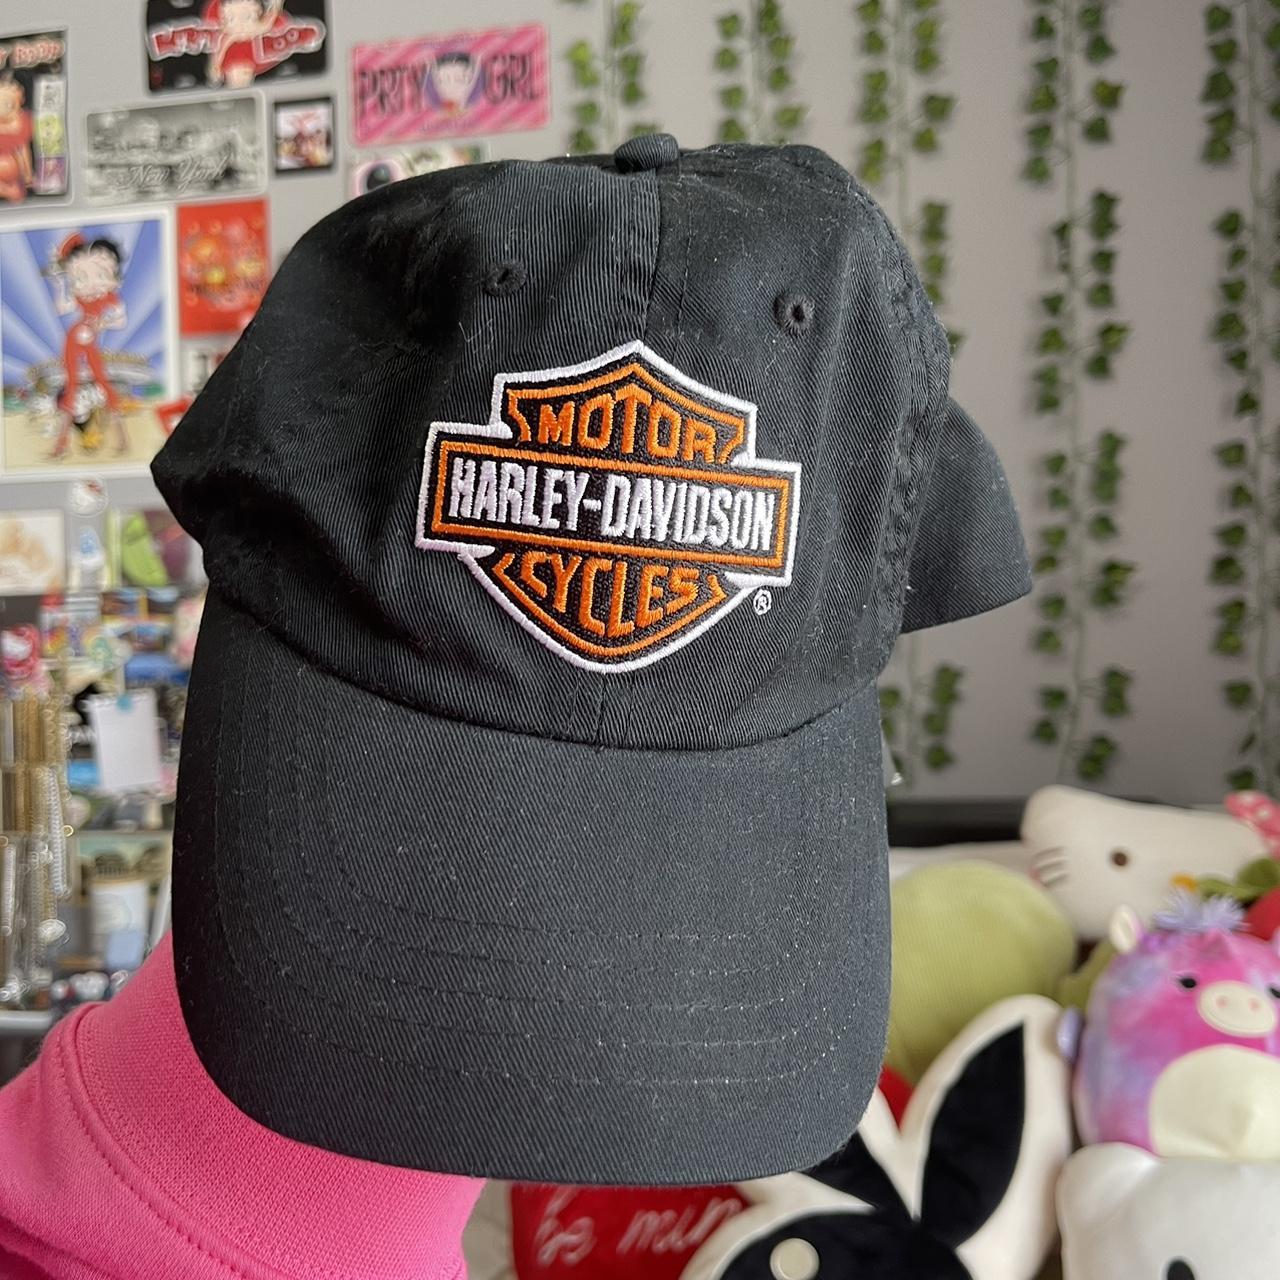 Harley Davidson Men's Black and Orange Hat (3)